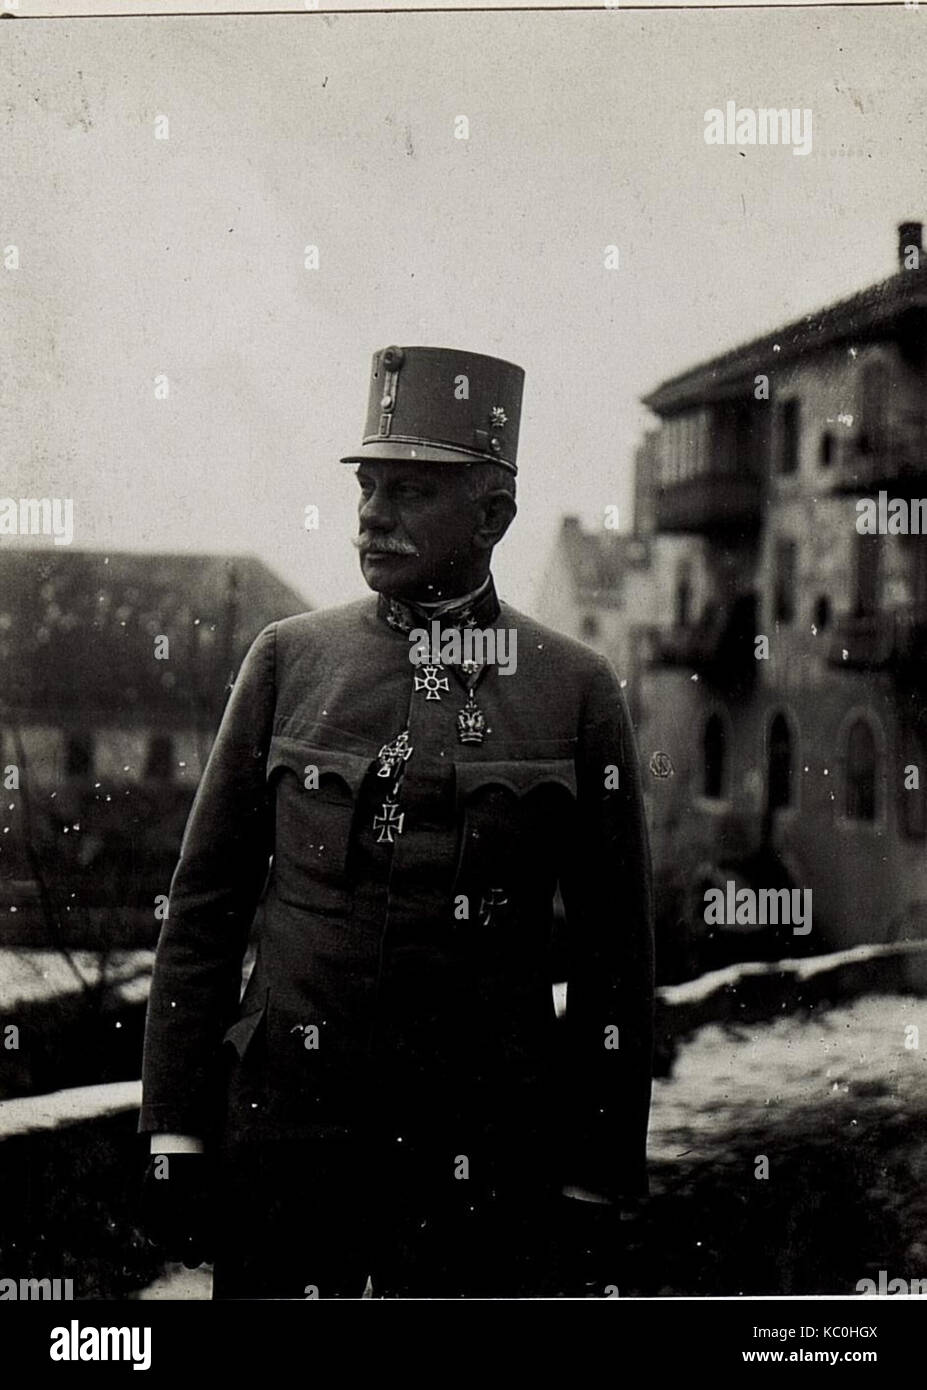 General der Infanterie Roth, Kommandant des alten 14. Korps in Bruneck, Ende November 1915. (BildID 15579748) Stock Photo